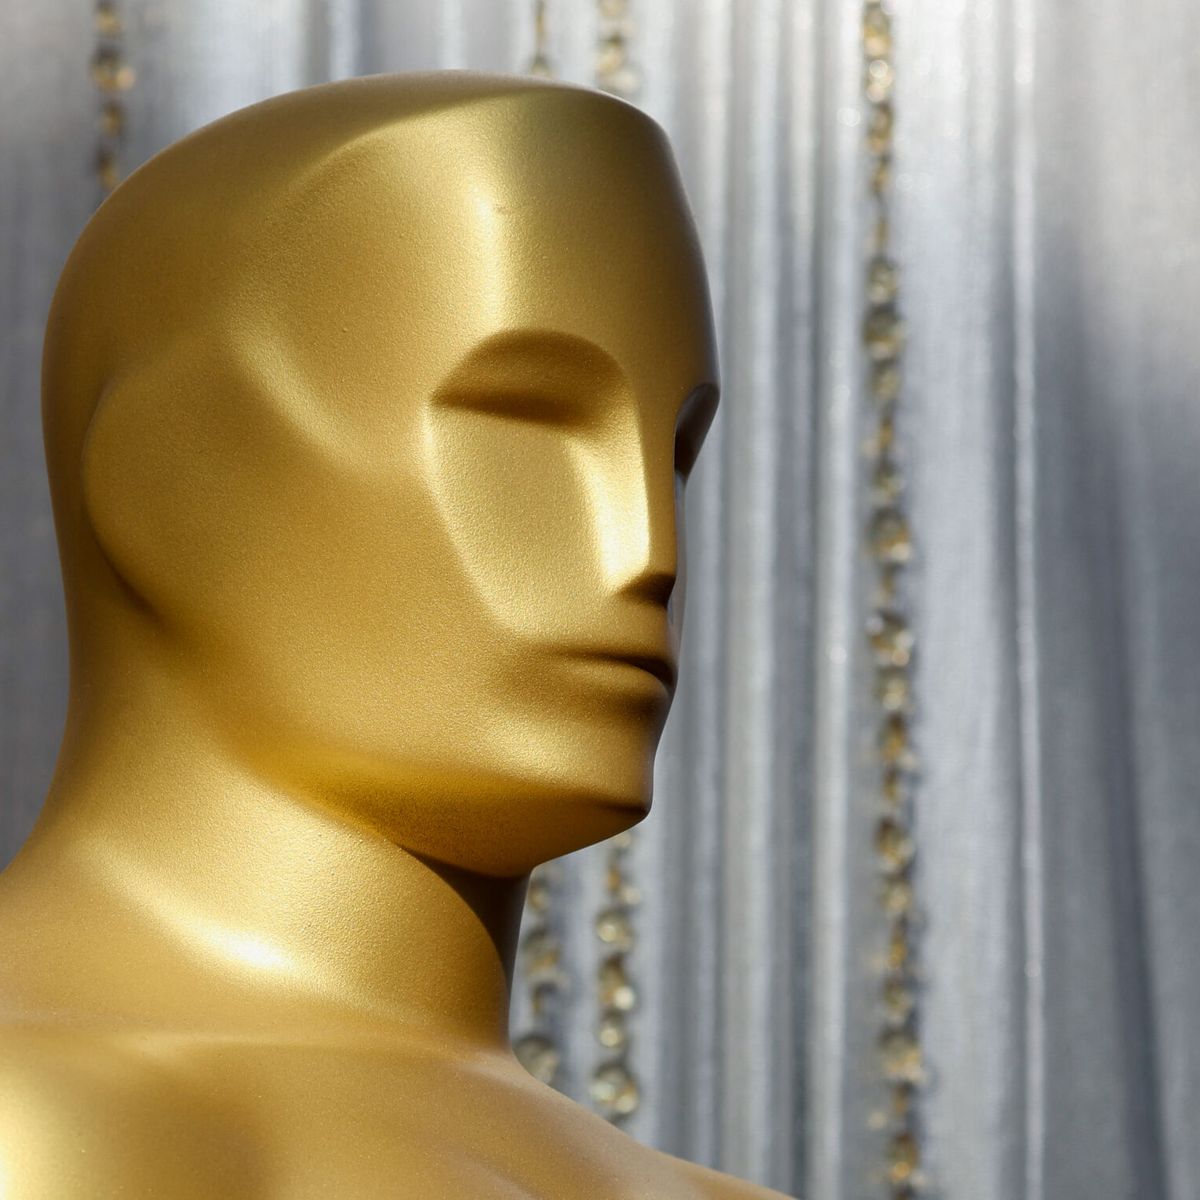 Cuándo se entregan los Oscar 2023? Esta es la fecha y hora